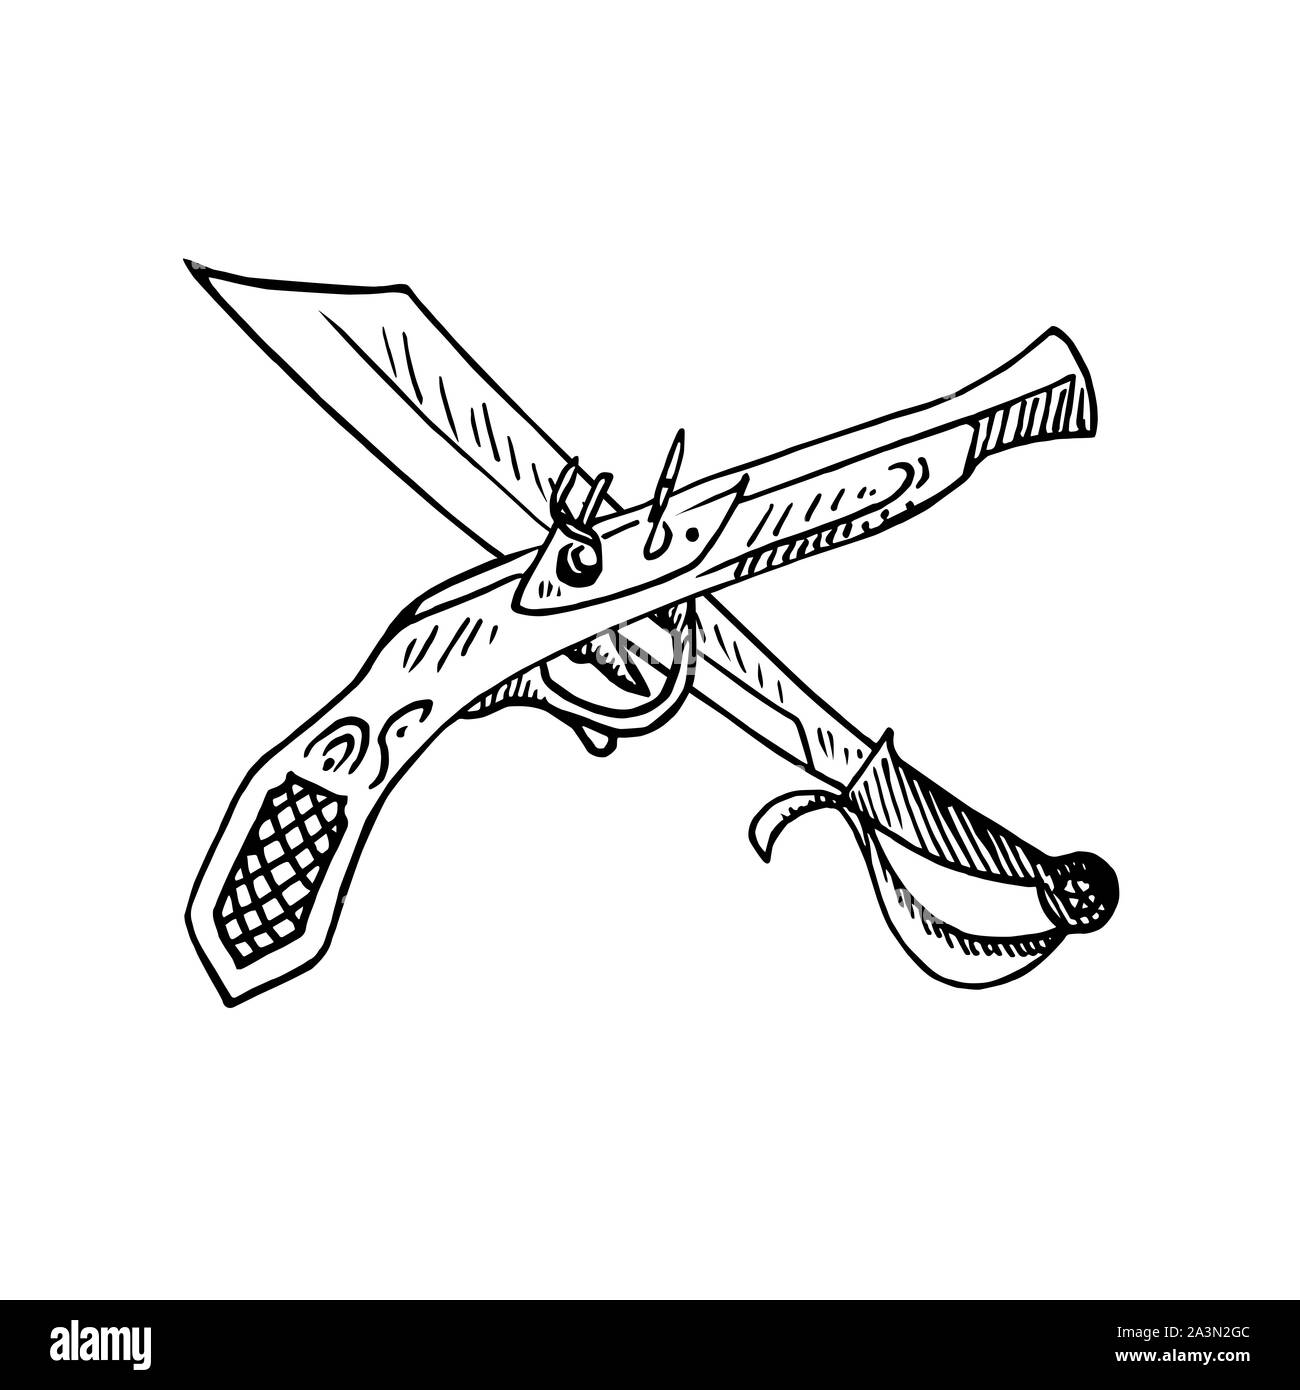 El viejo estilo de pistola y machete cruzados, vista lateral, dibujadas a mano doodle, Boceto, ilustración en blanco y negro Foto de stock